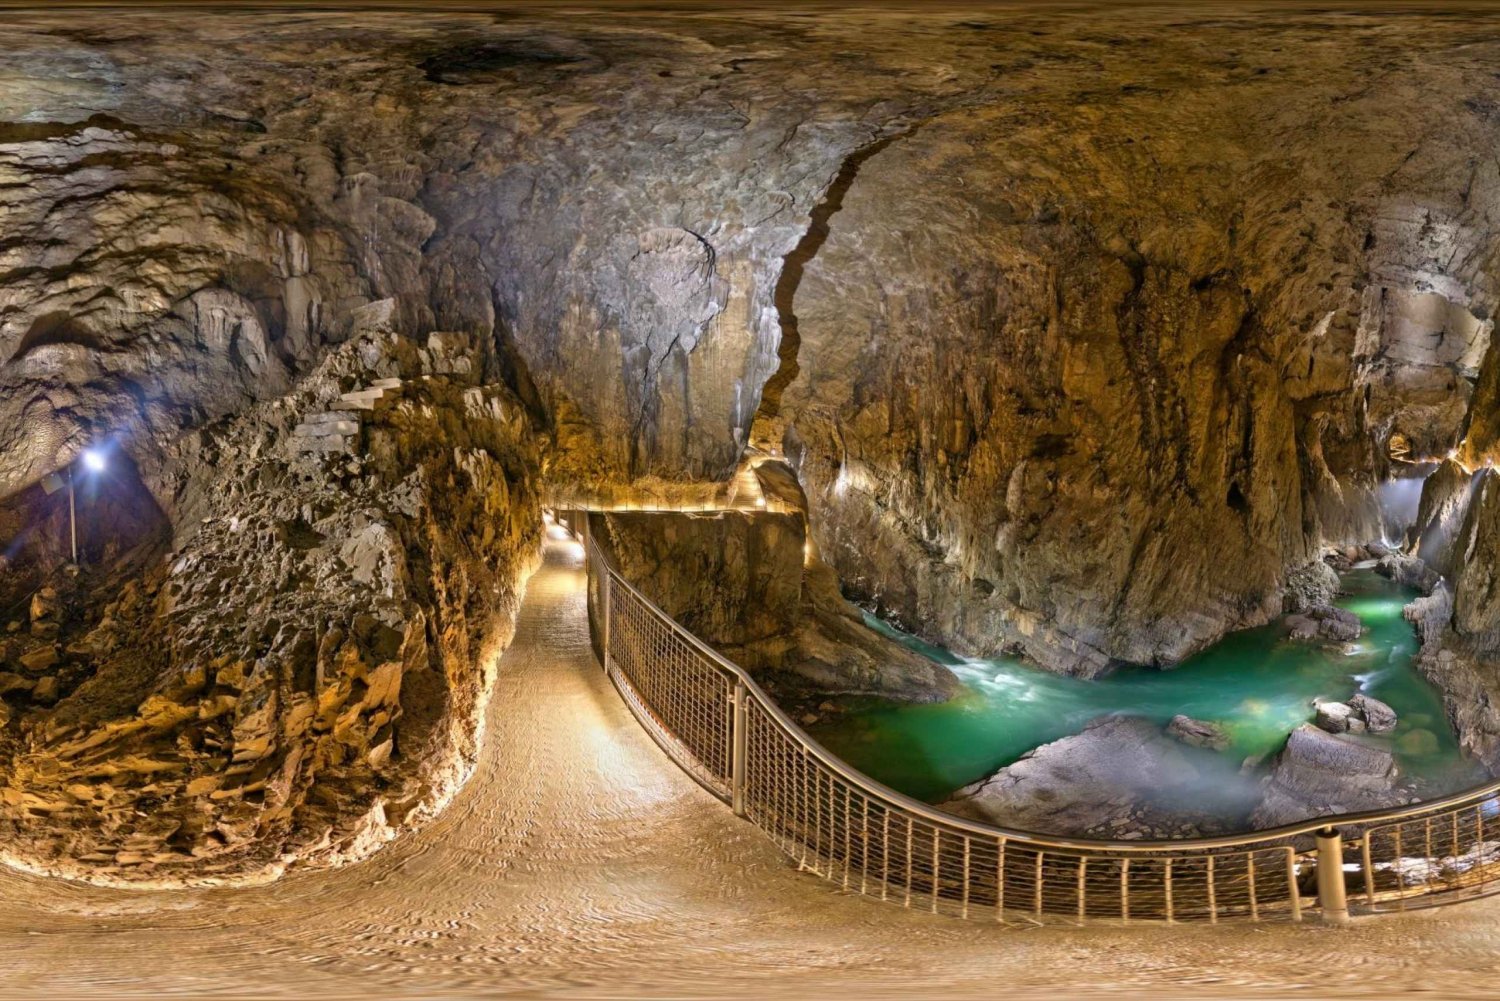 Lipica Stud Farm & Škocjan Caves from Koper